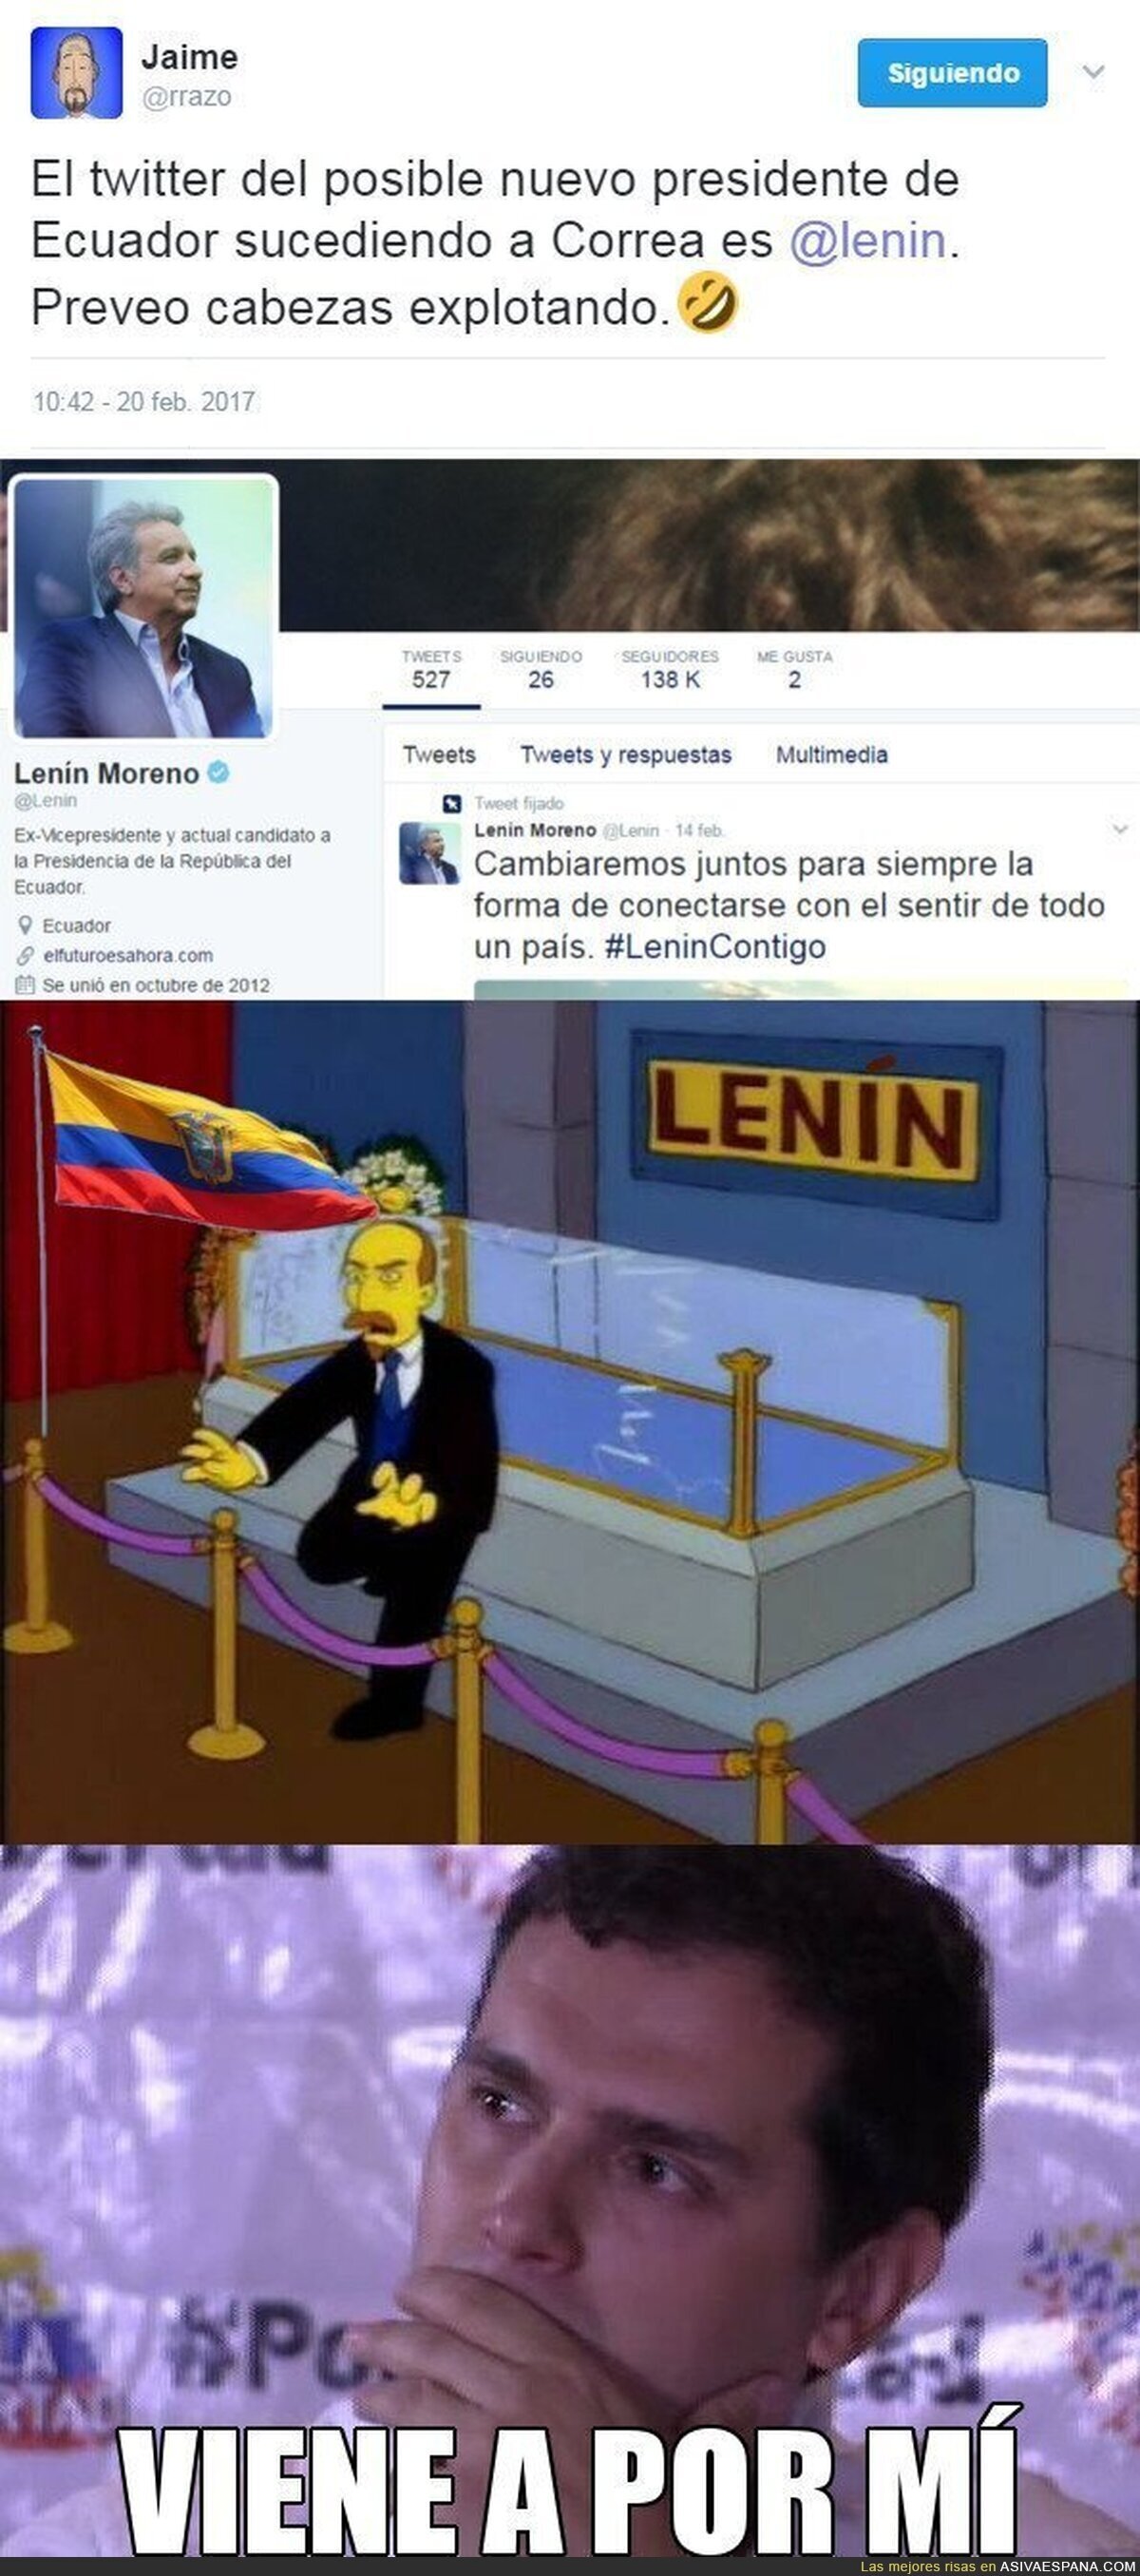 ¡Cuidado liberales, que vuelve Lenin!